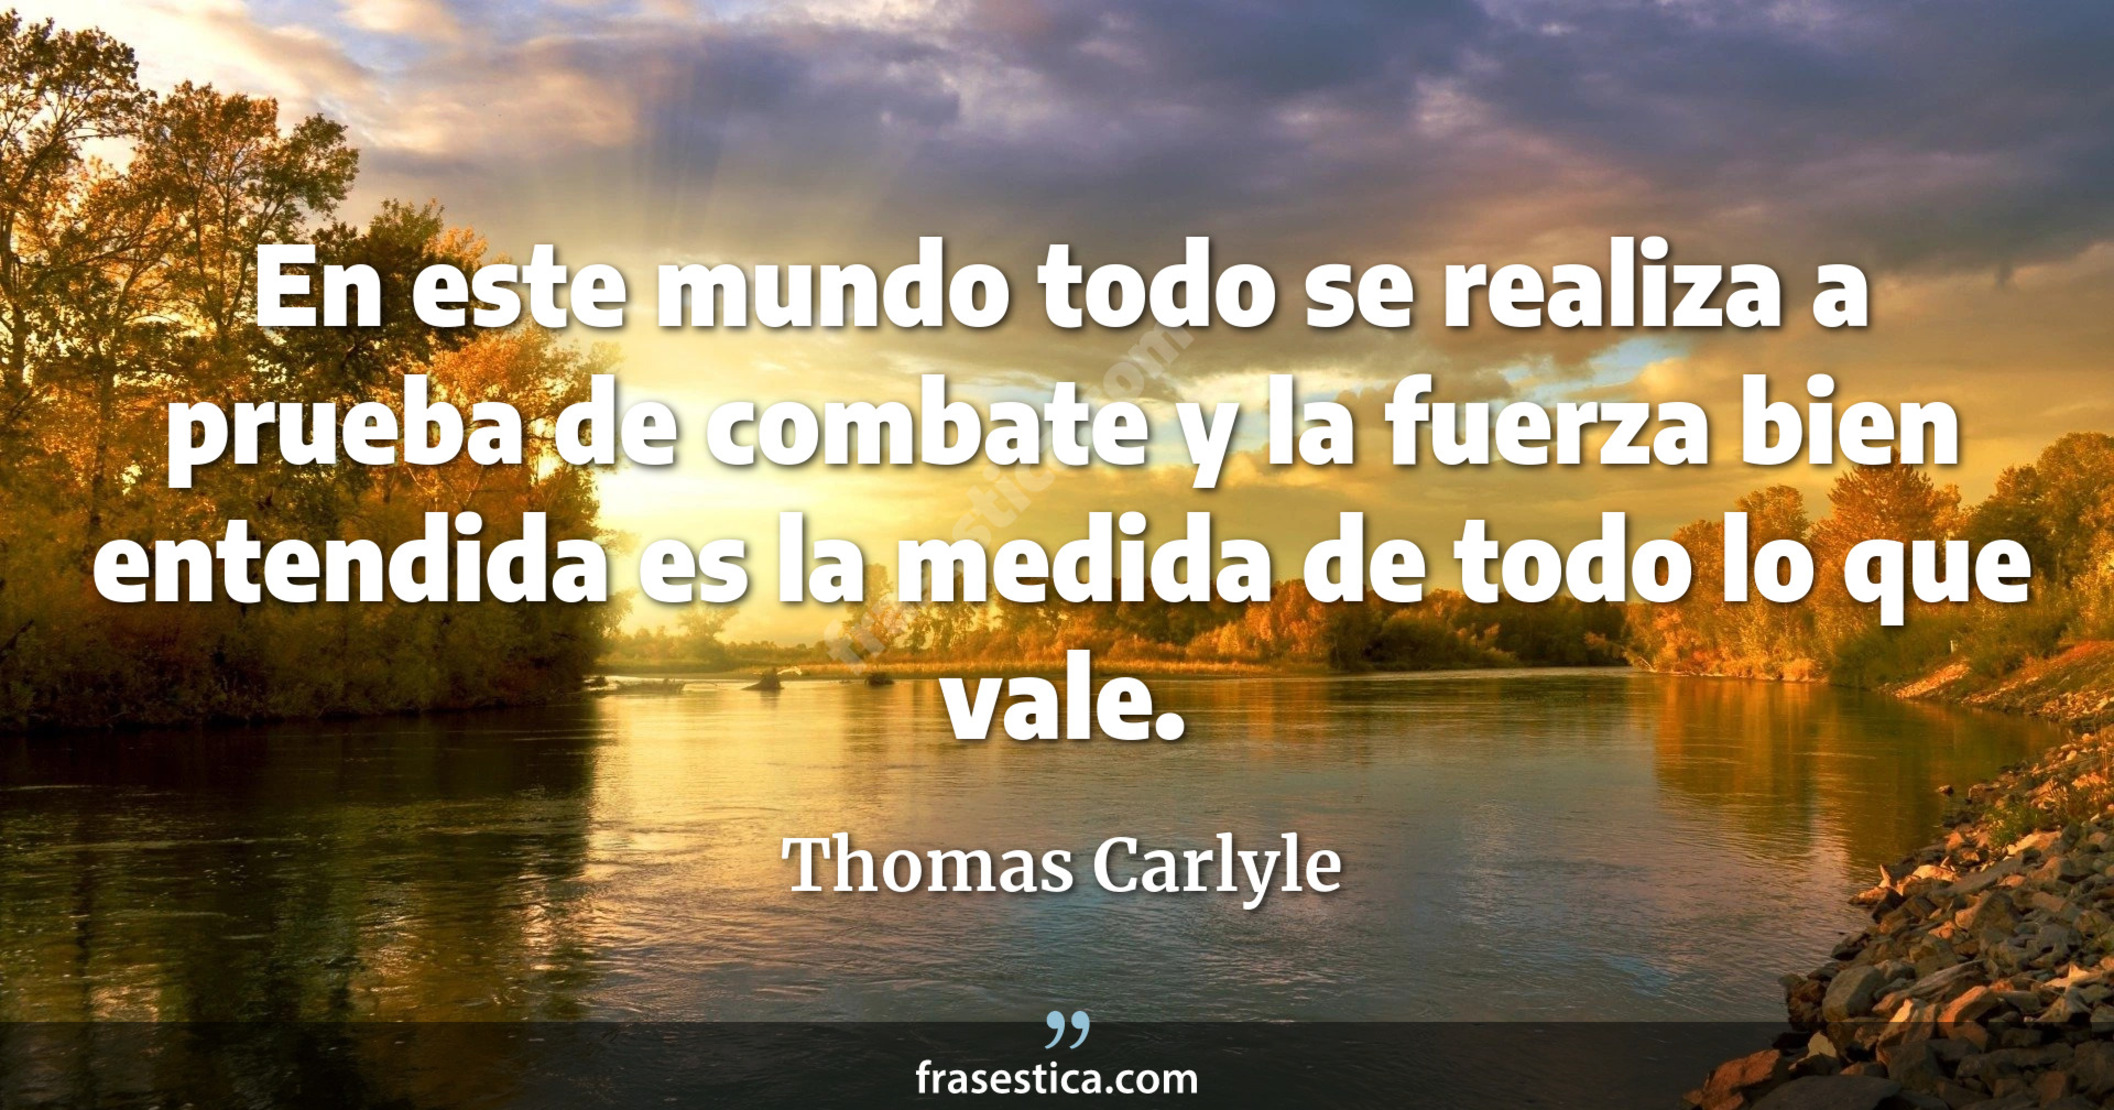 En este mundo todo se realiza a prueba de combate y la fuerza bien entendida es la medida de todo lo que vale. - Thomas Carlyle